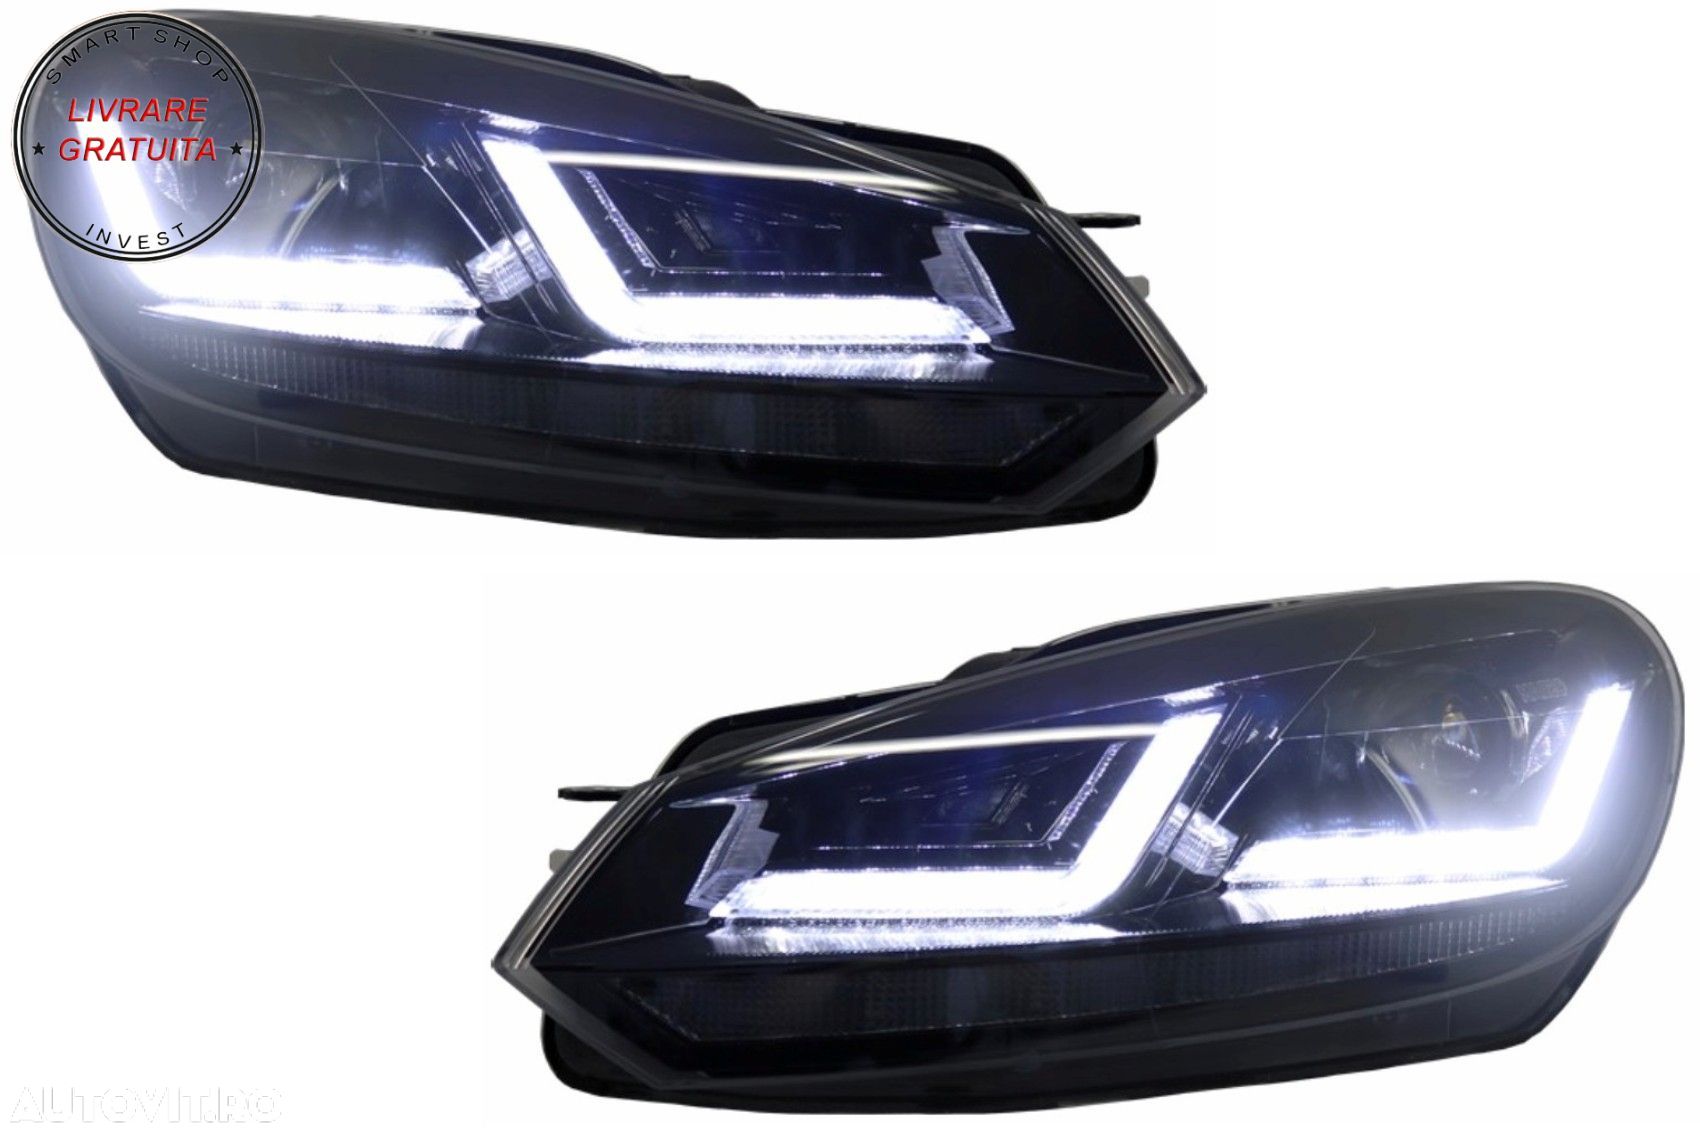 Faruri Osram LED VW Golf 6 VI (2008-2012) Black LEDriving Semnal Dinamic- livrare gratuita - 1